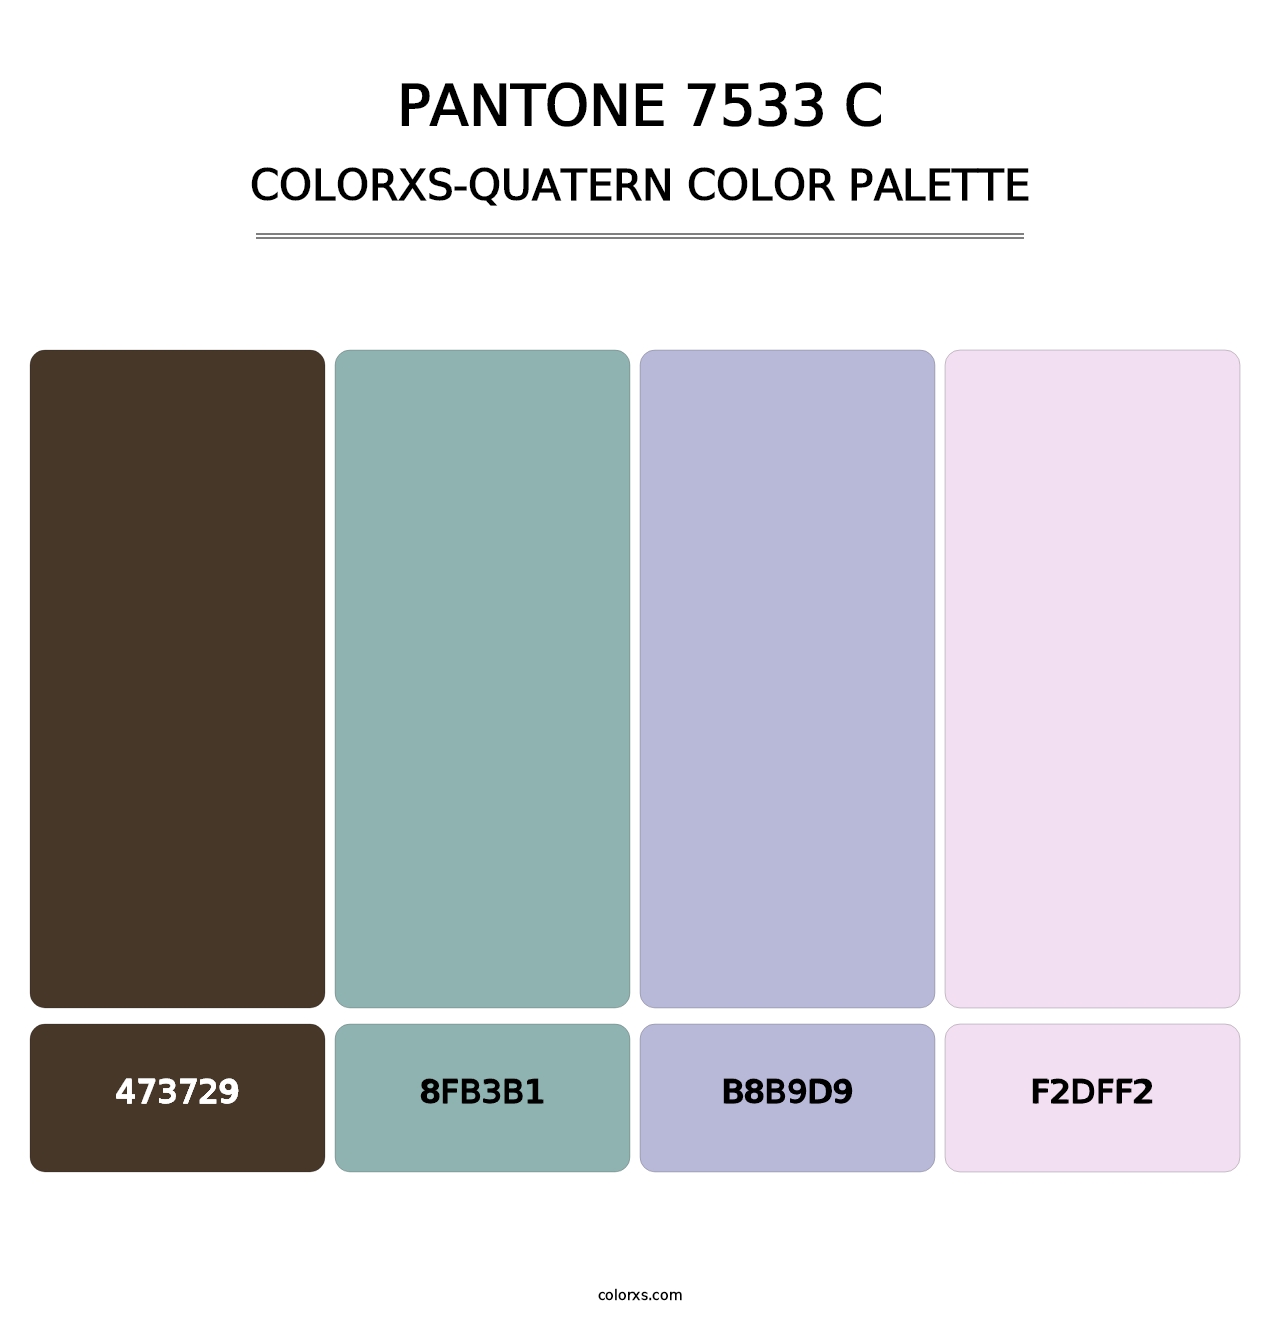 PANTONE 7533 C - Colorxs Quatern Palette